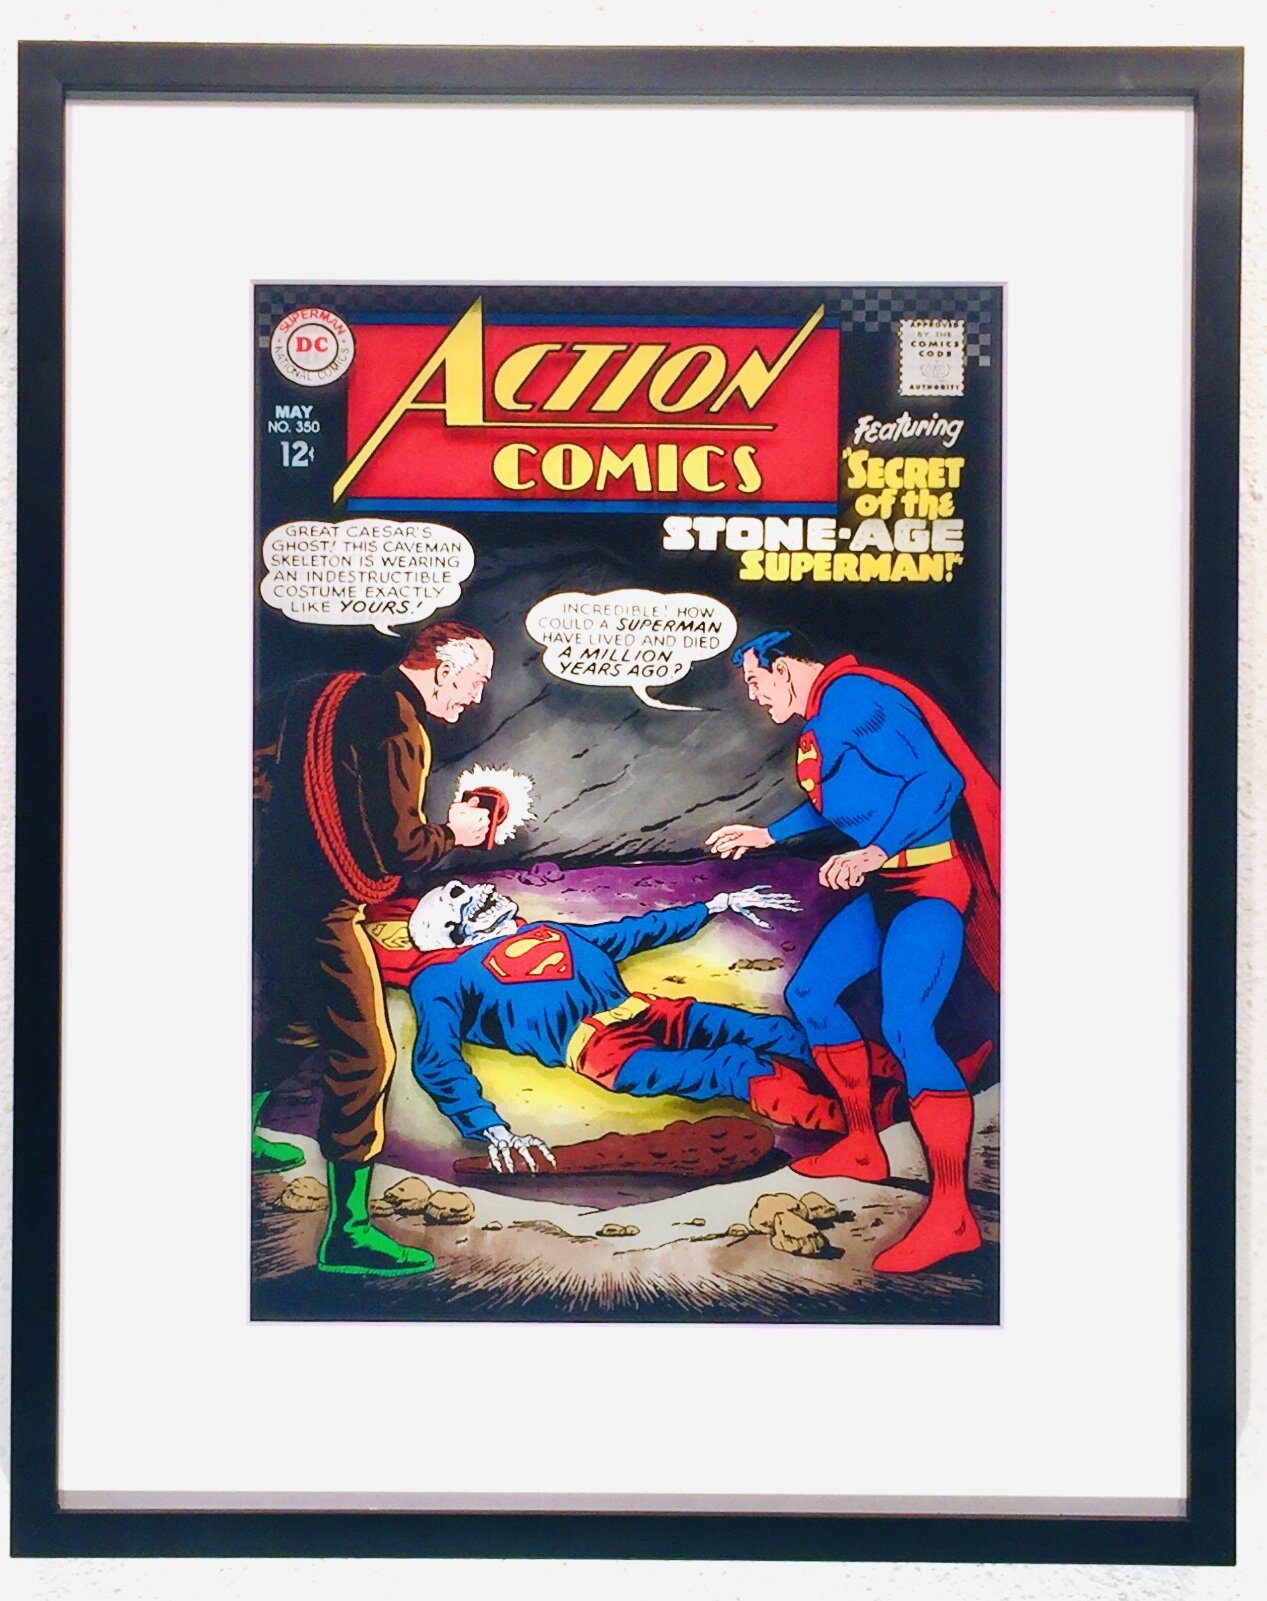 Action Comics Vol. 1, No. 350